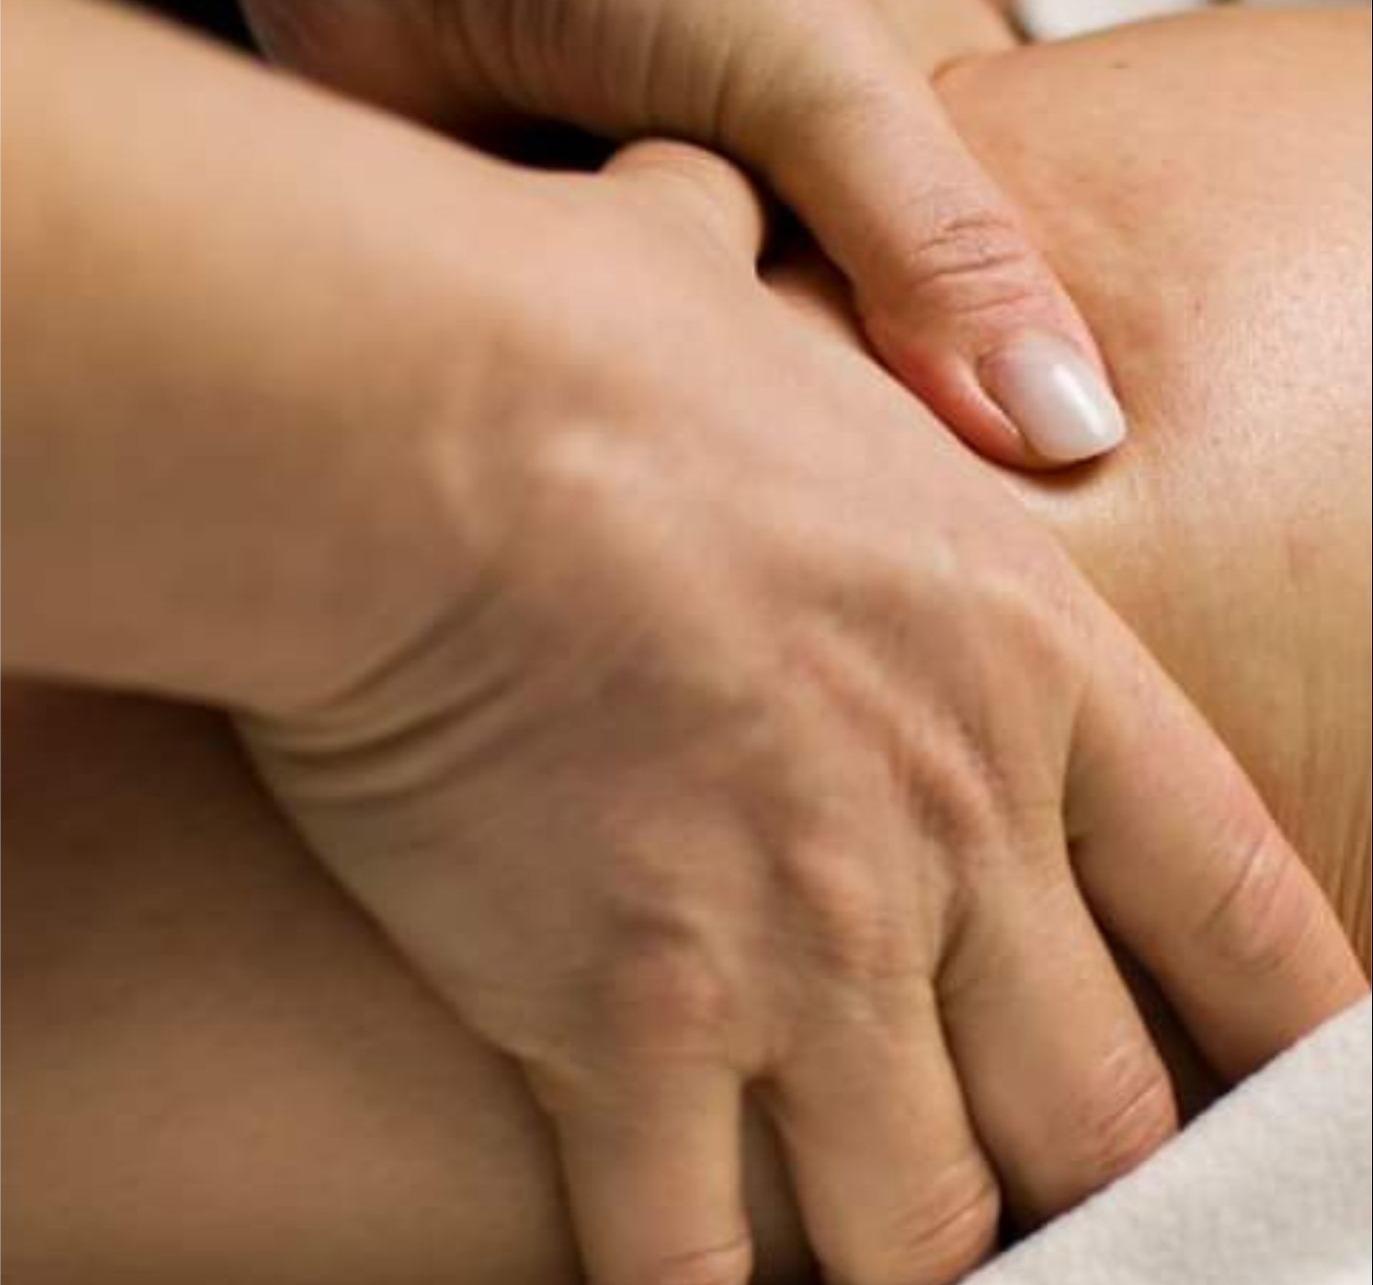 Un massaggio unico al mondo per la tua salute - "Gambe sane"